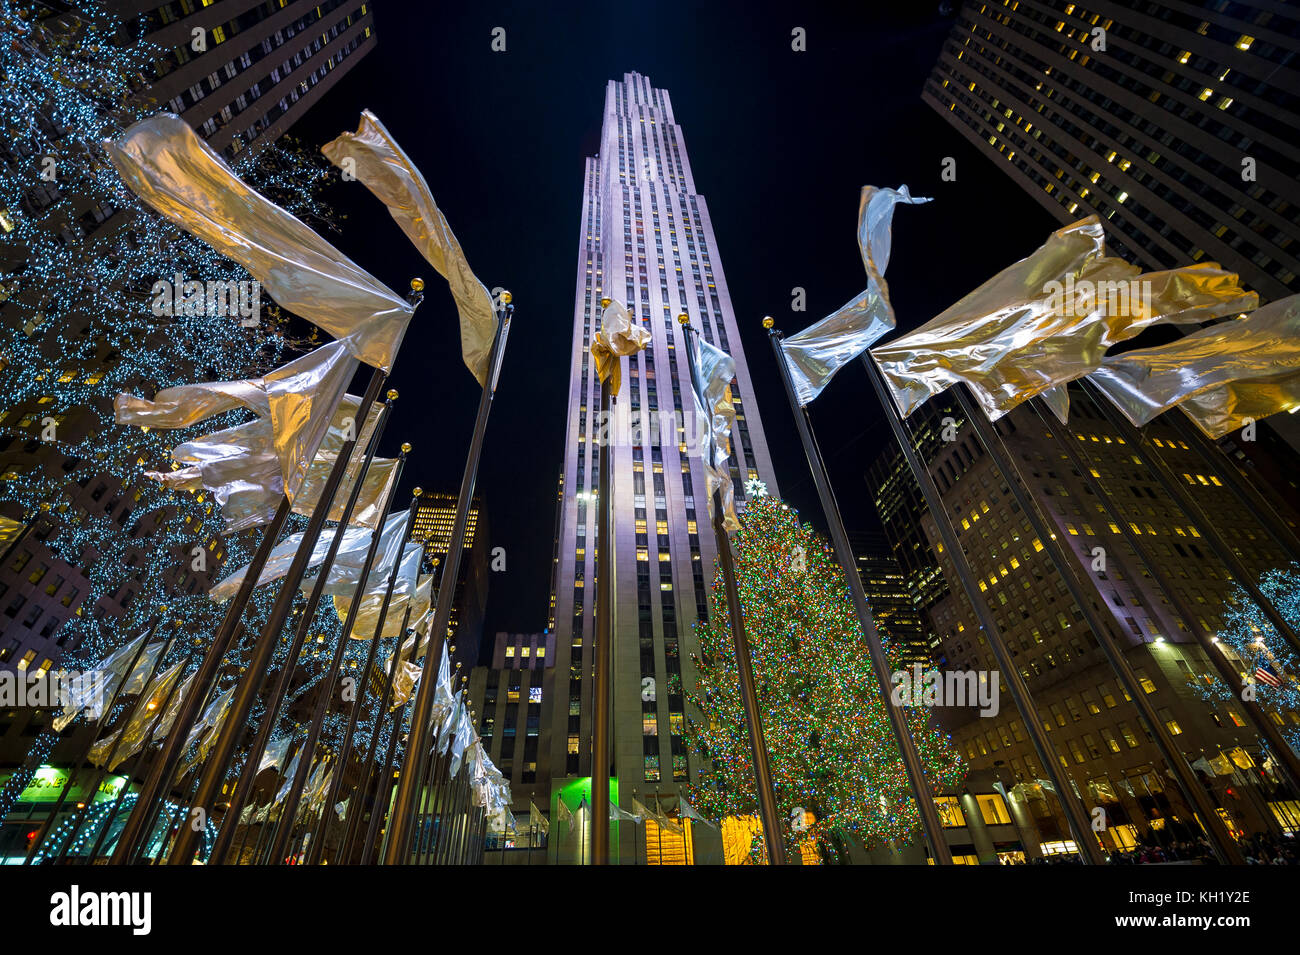 New york city - 21 décembre 2016 : maison de vacances drapeaux volent autour de la place centrale en face de l'arbre de Noël du Rockefeller Center, l'un des meilleurs de la ville. Banque D'Images